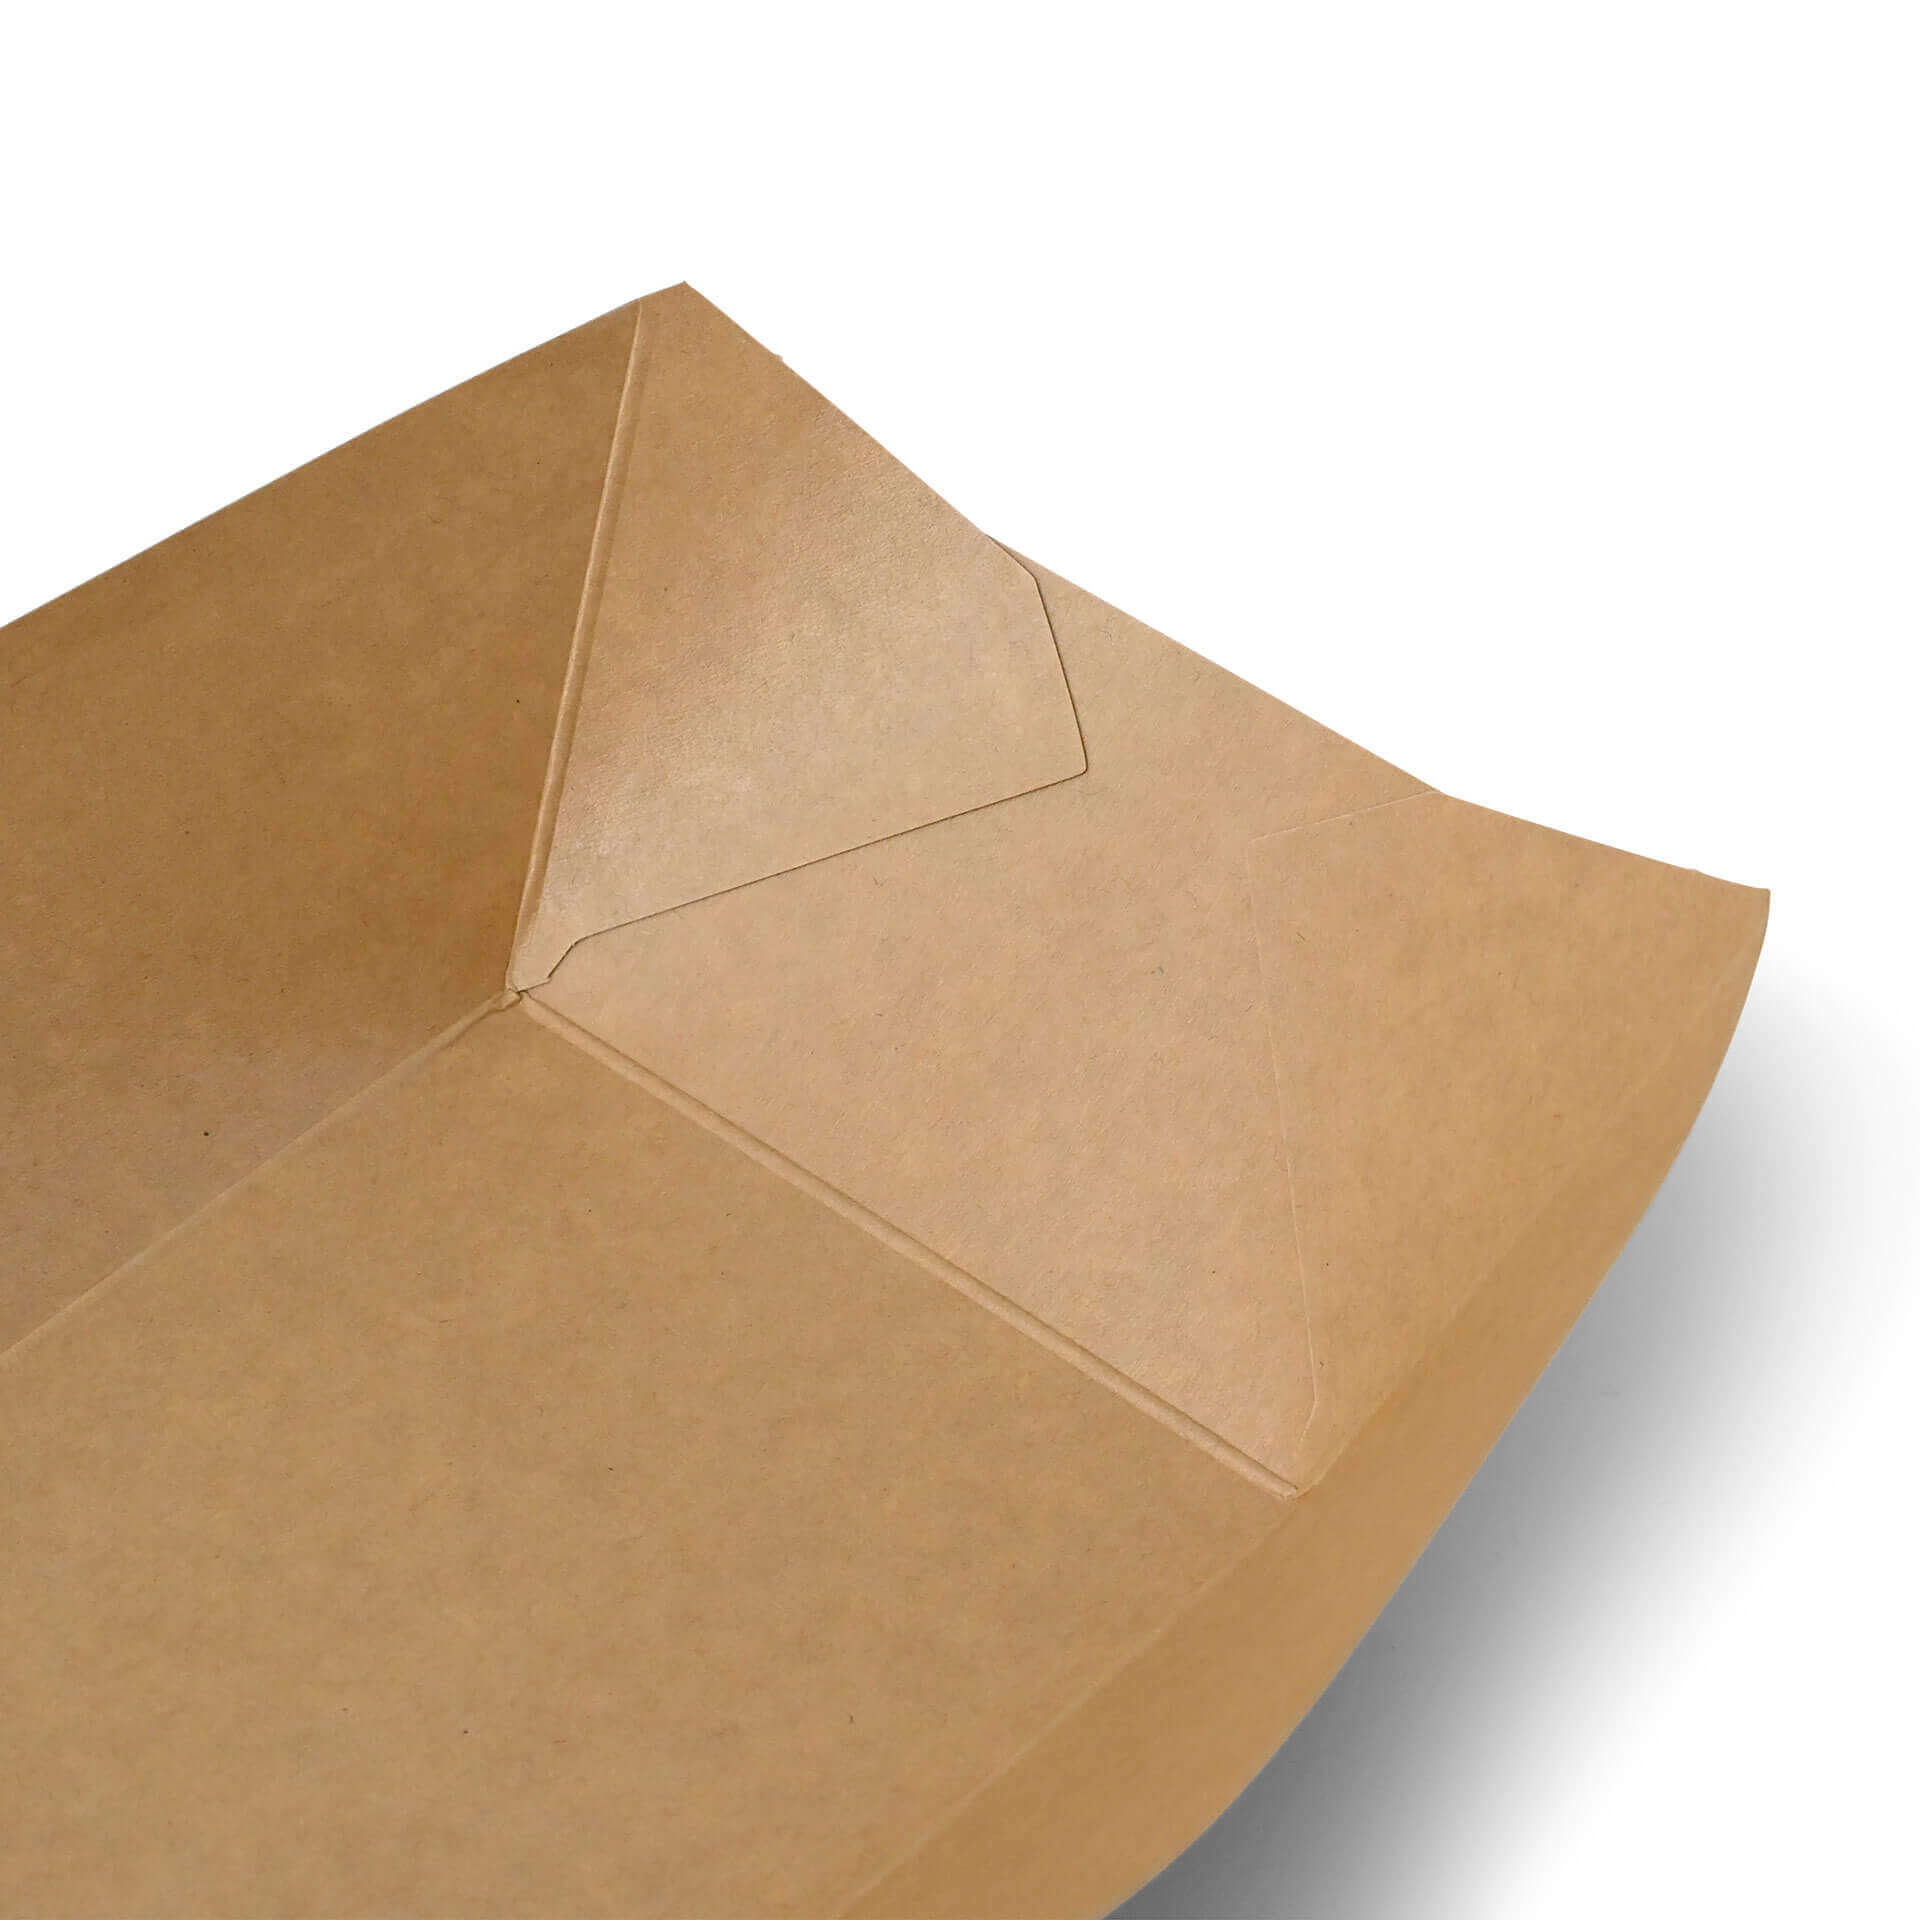 Karton-Snack-Schalen 800 ml, 21,5 x 16 x 5 cm, braun